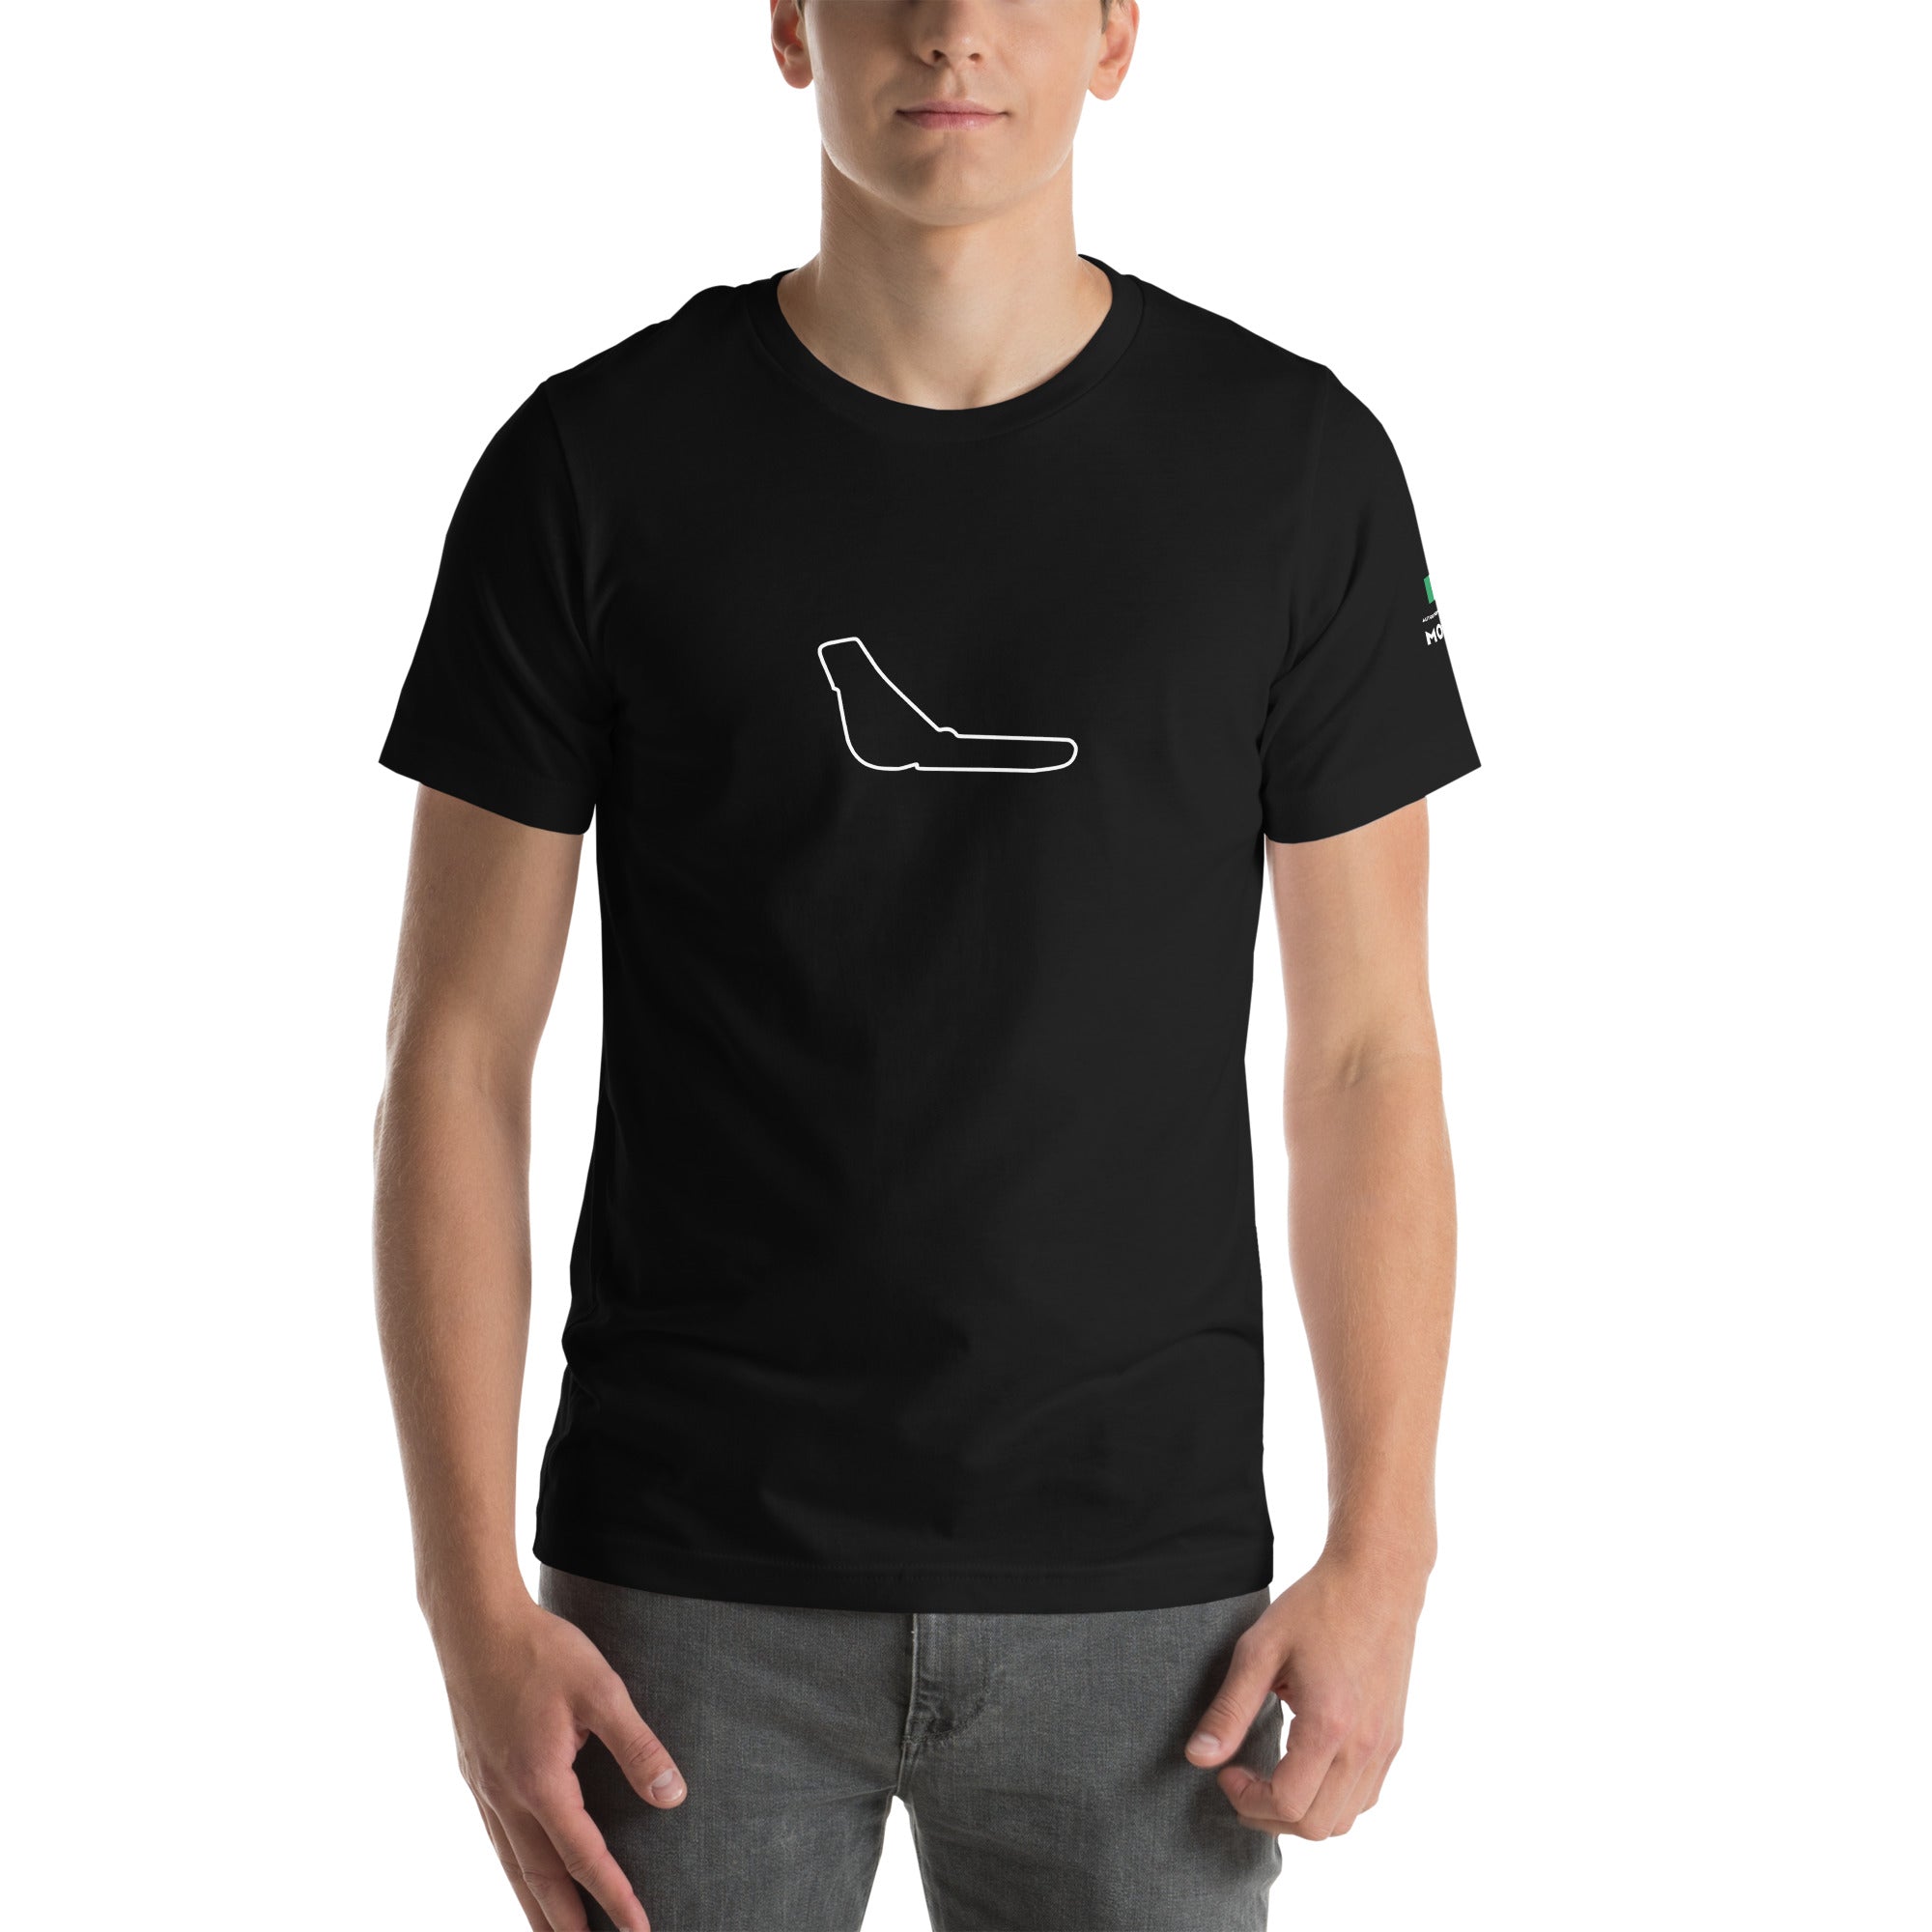 Monza: F1 Historic Circuit - Unisex T-Shirt Black front 